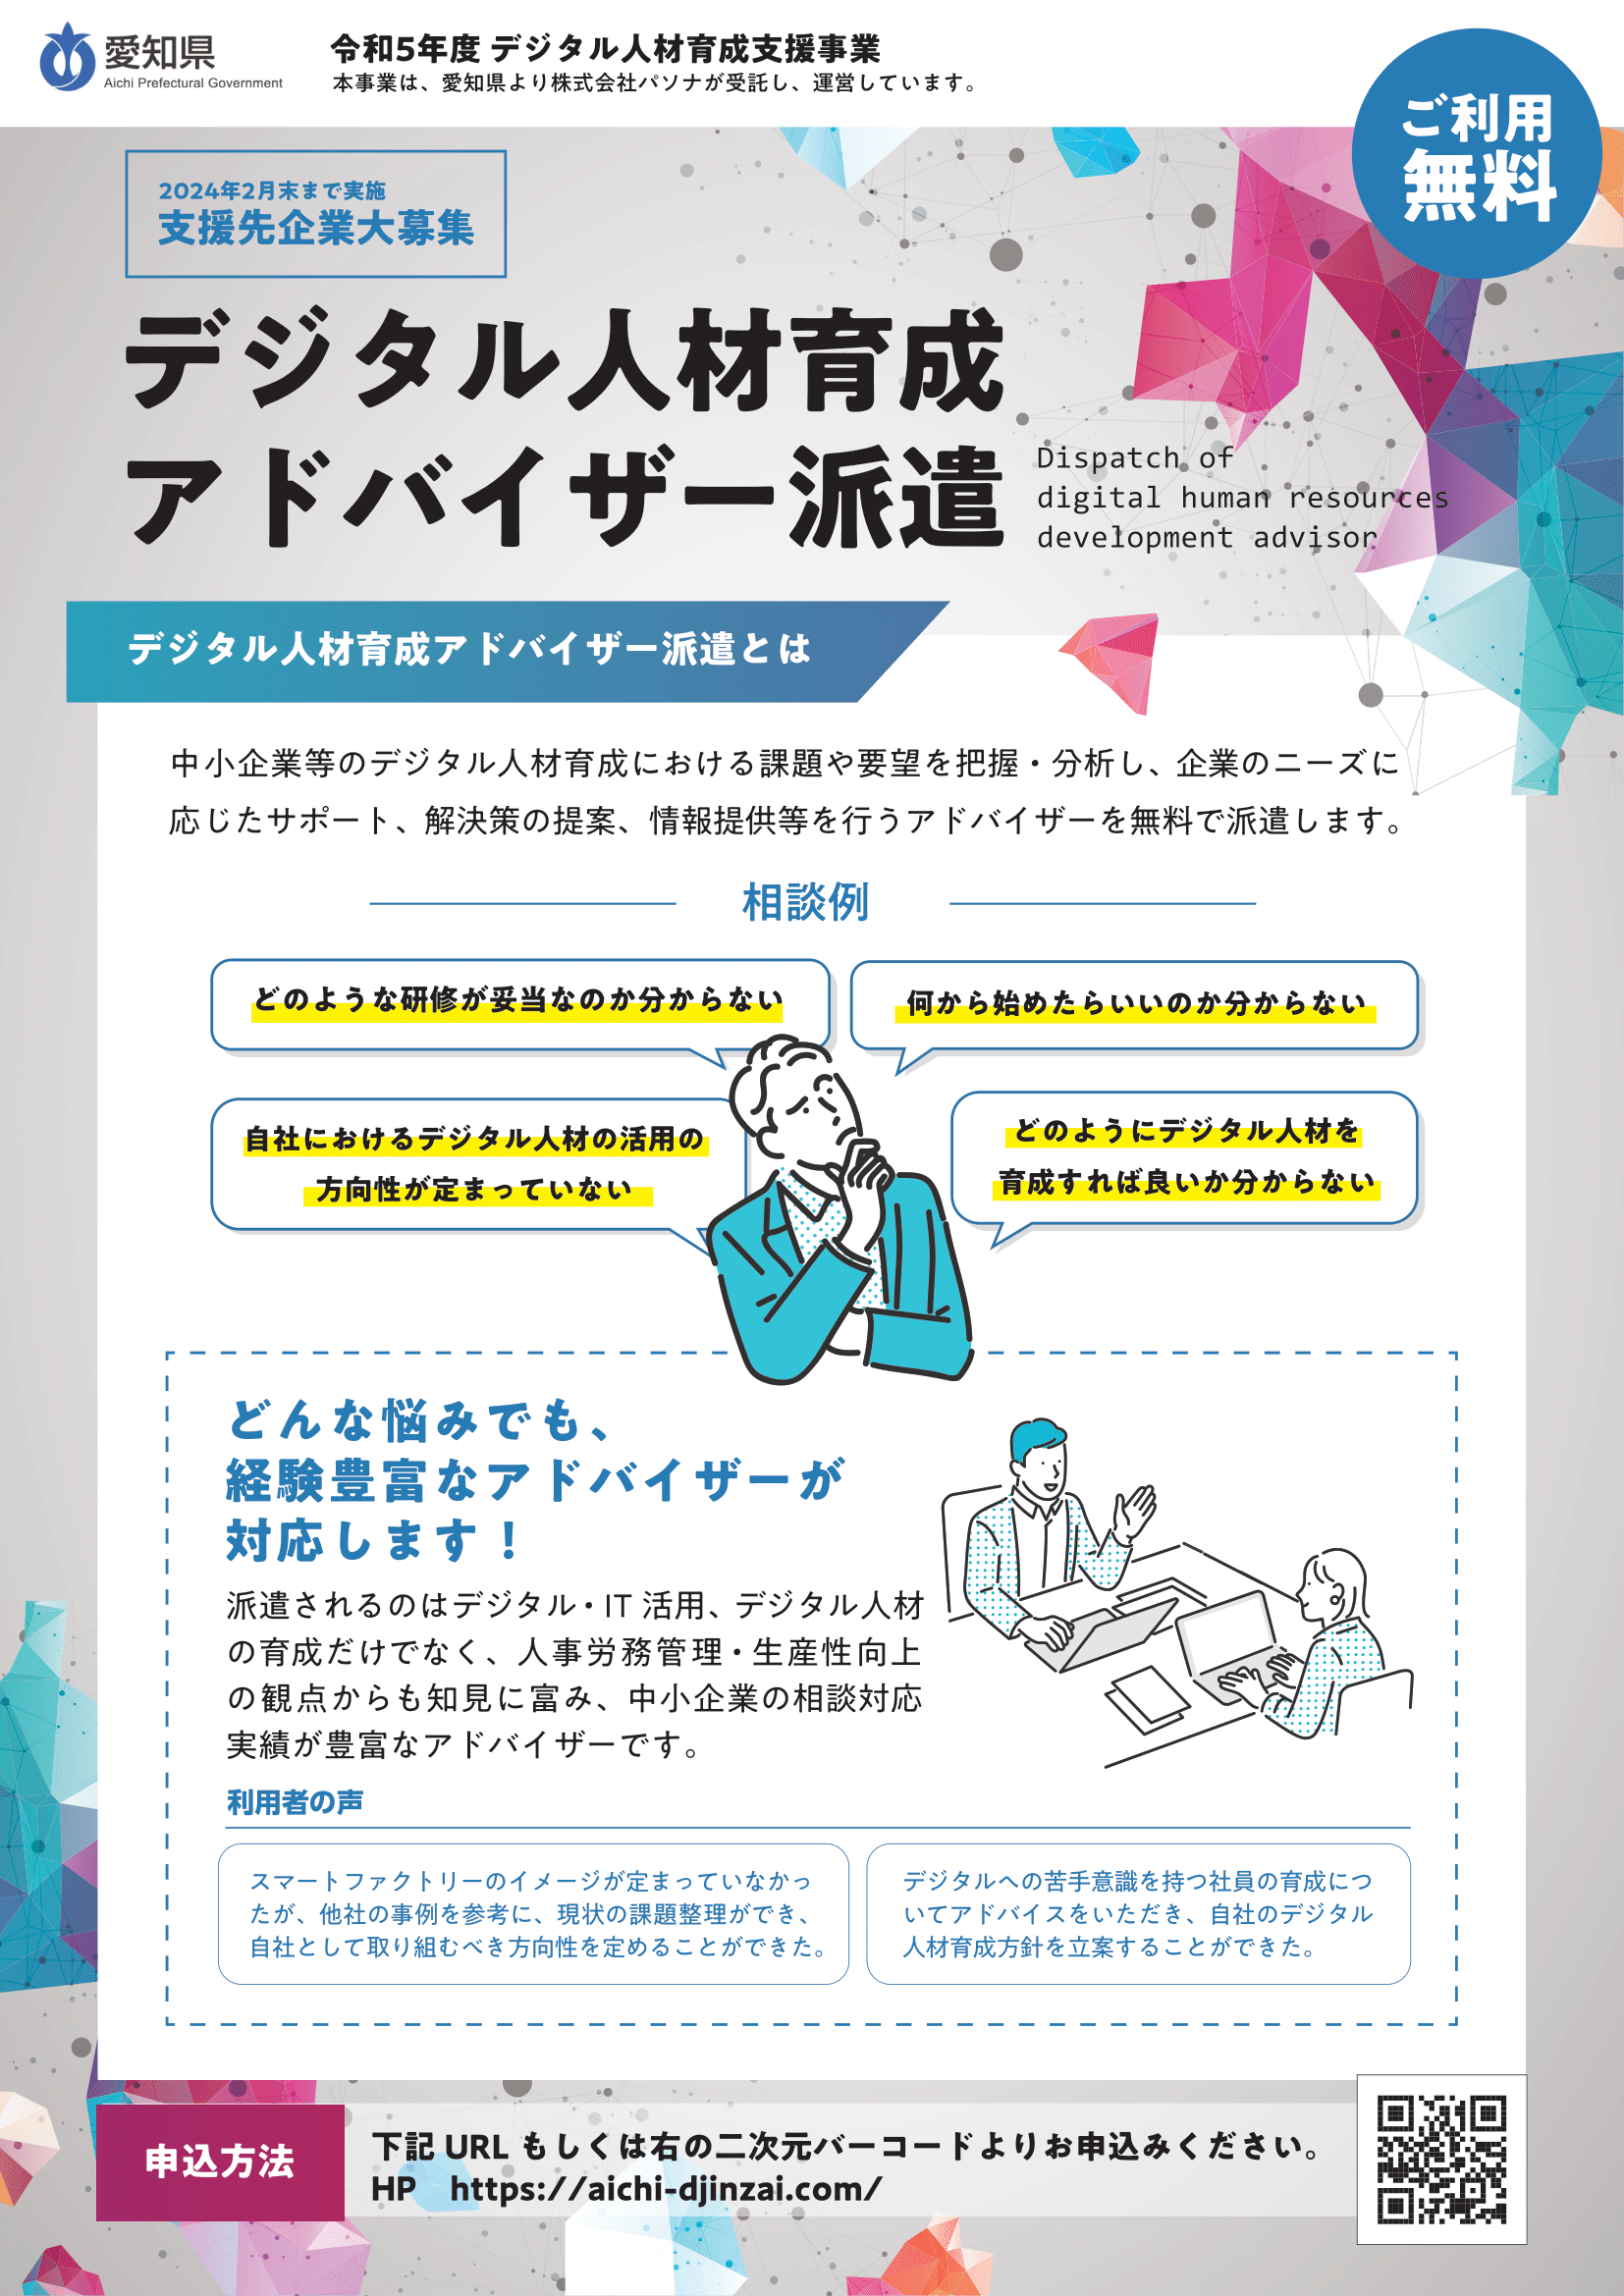 愛知県デジタル人材育成支援事業